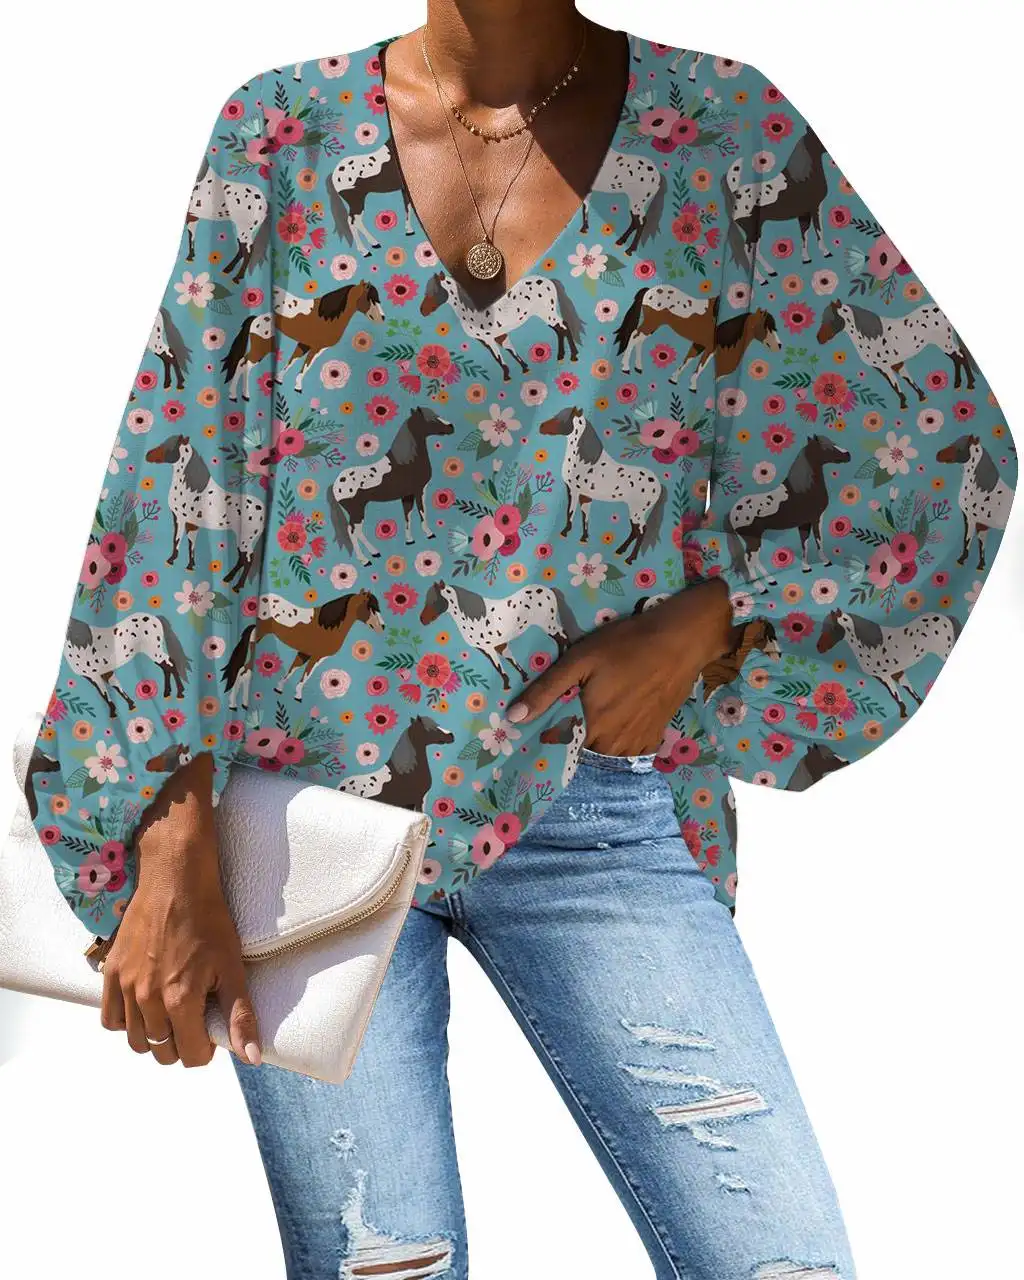 Bir sipariş Appaloosa at çiçek baskı kadın bluzları özel desen yarım kollu v yaka Casual kadın şifon gömlek